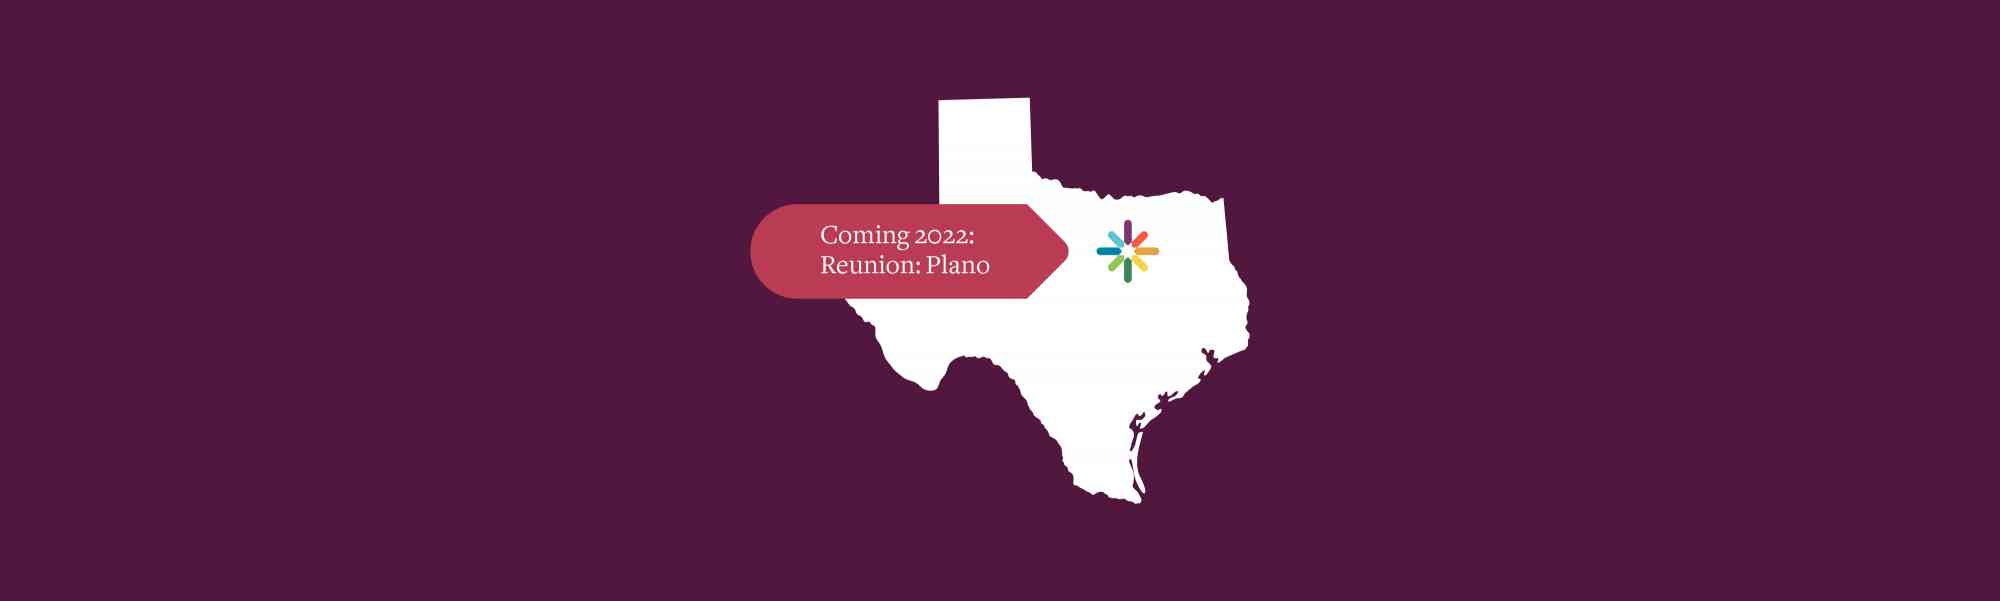 Coming 2022 — Reunion: Plano